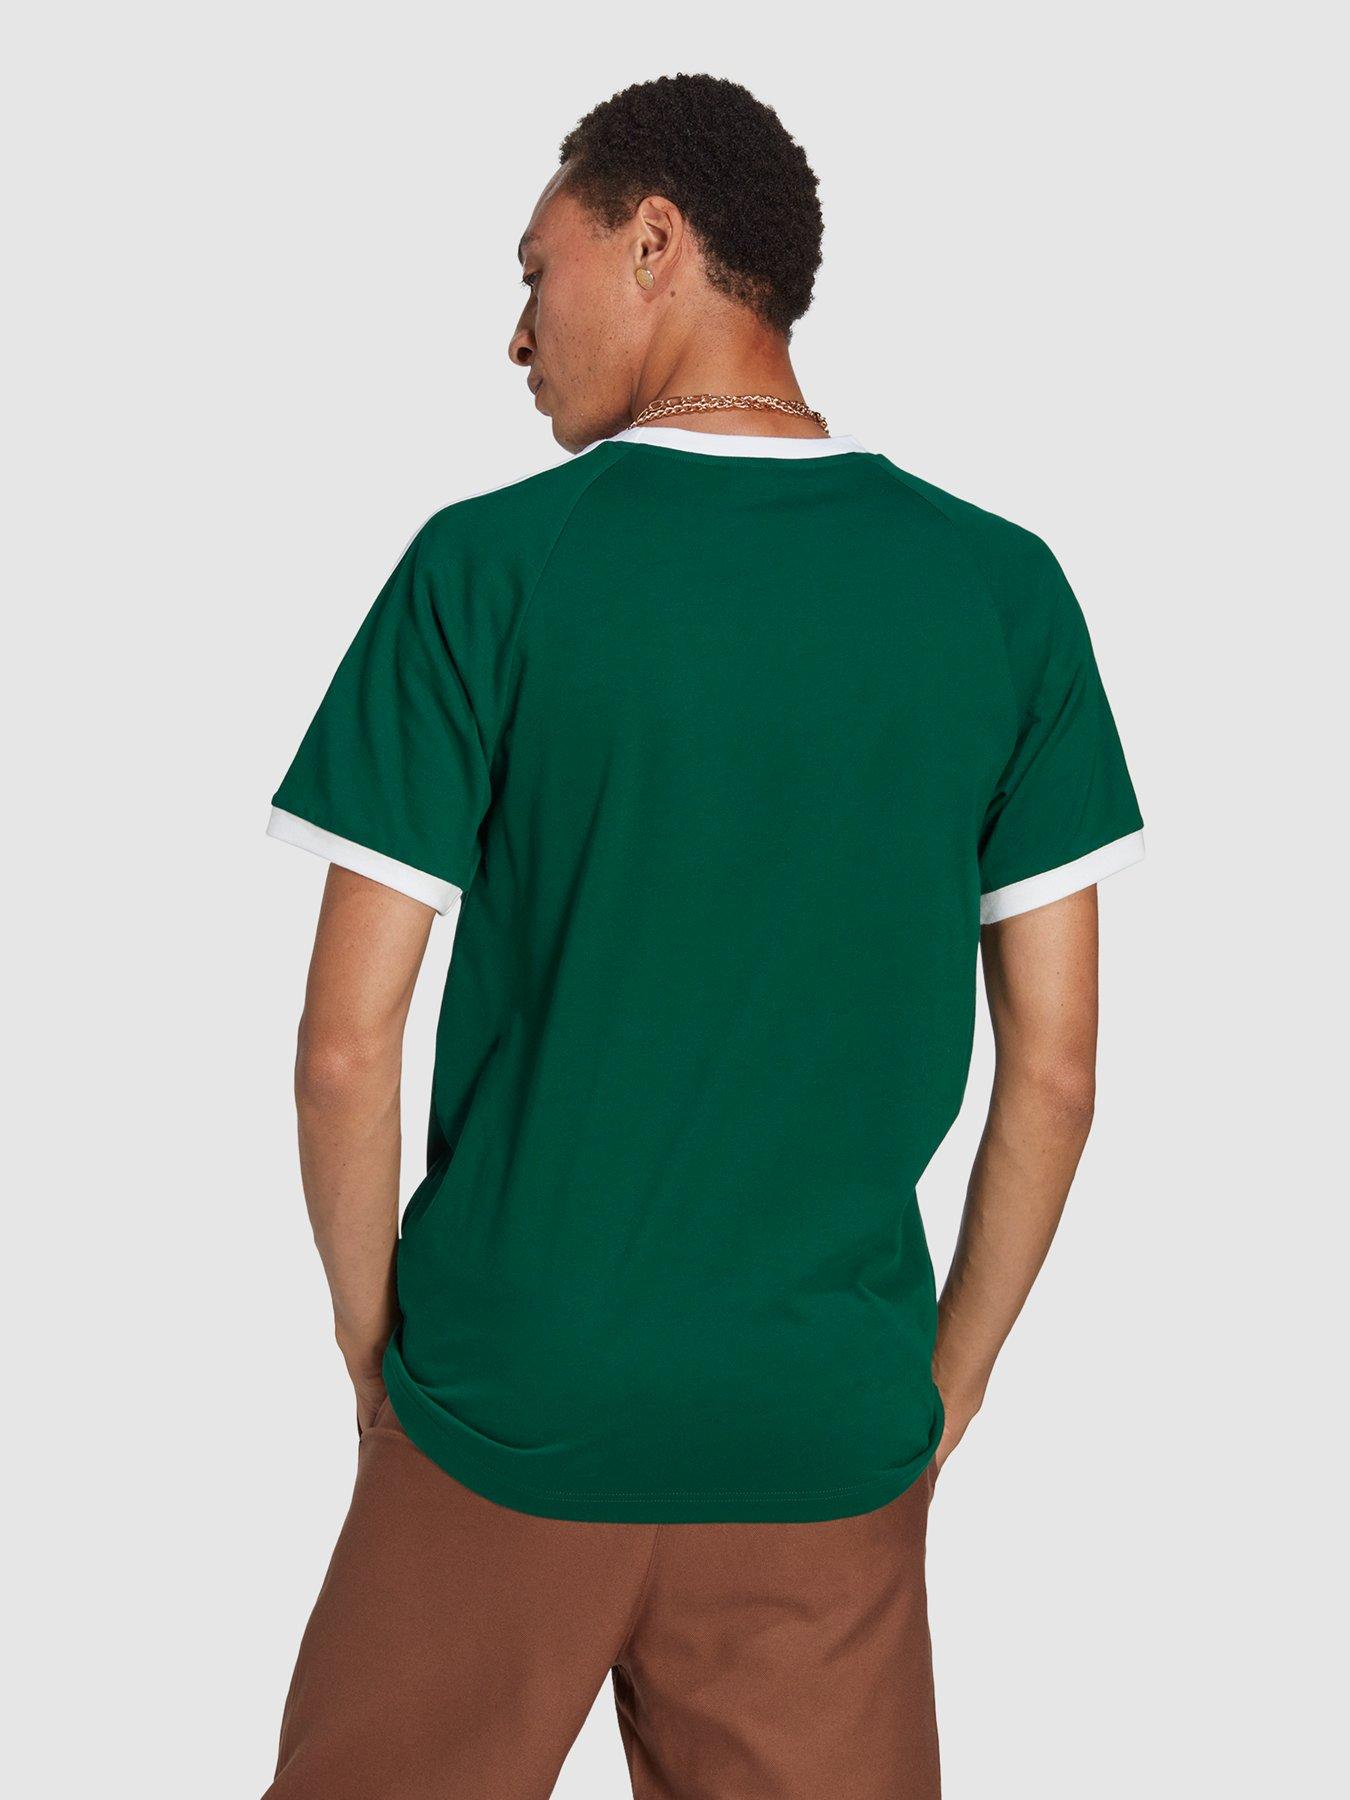 3-Stripes Originals - Green T-Shirt Classics Adicolor adidas